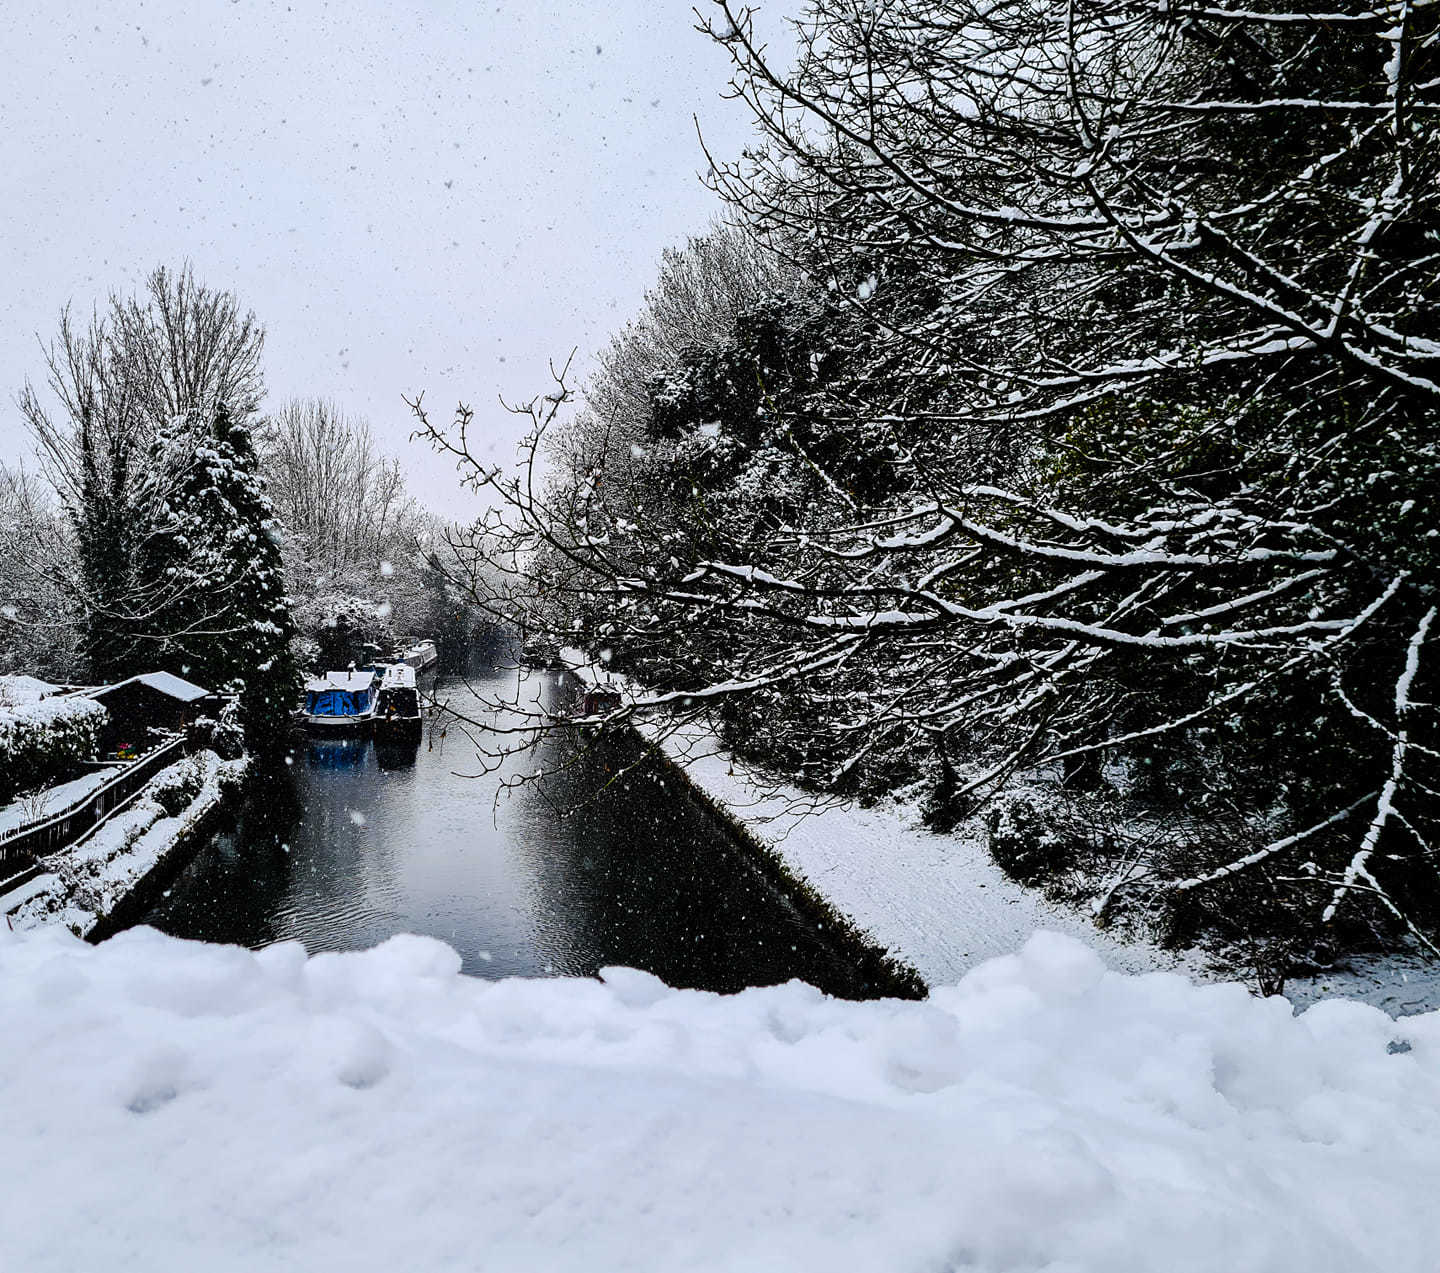 The snow falls on the canal at Hunton Bridge. Credit: Raluk Nemteanu